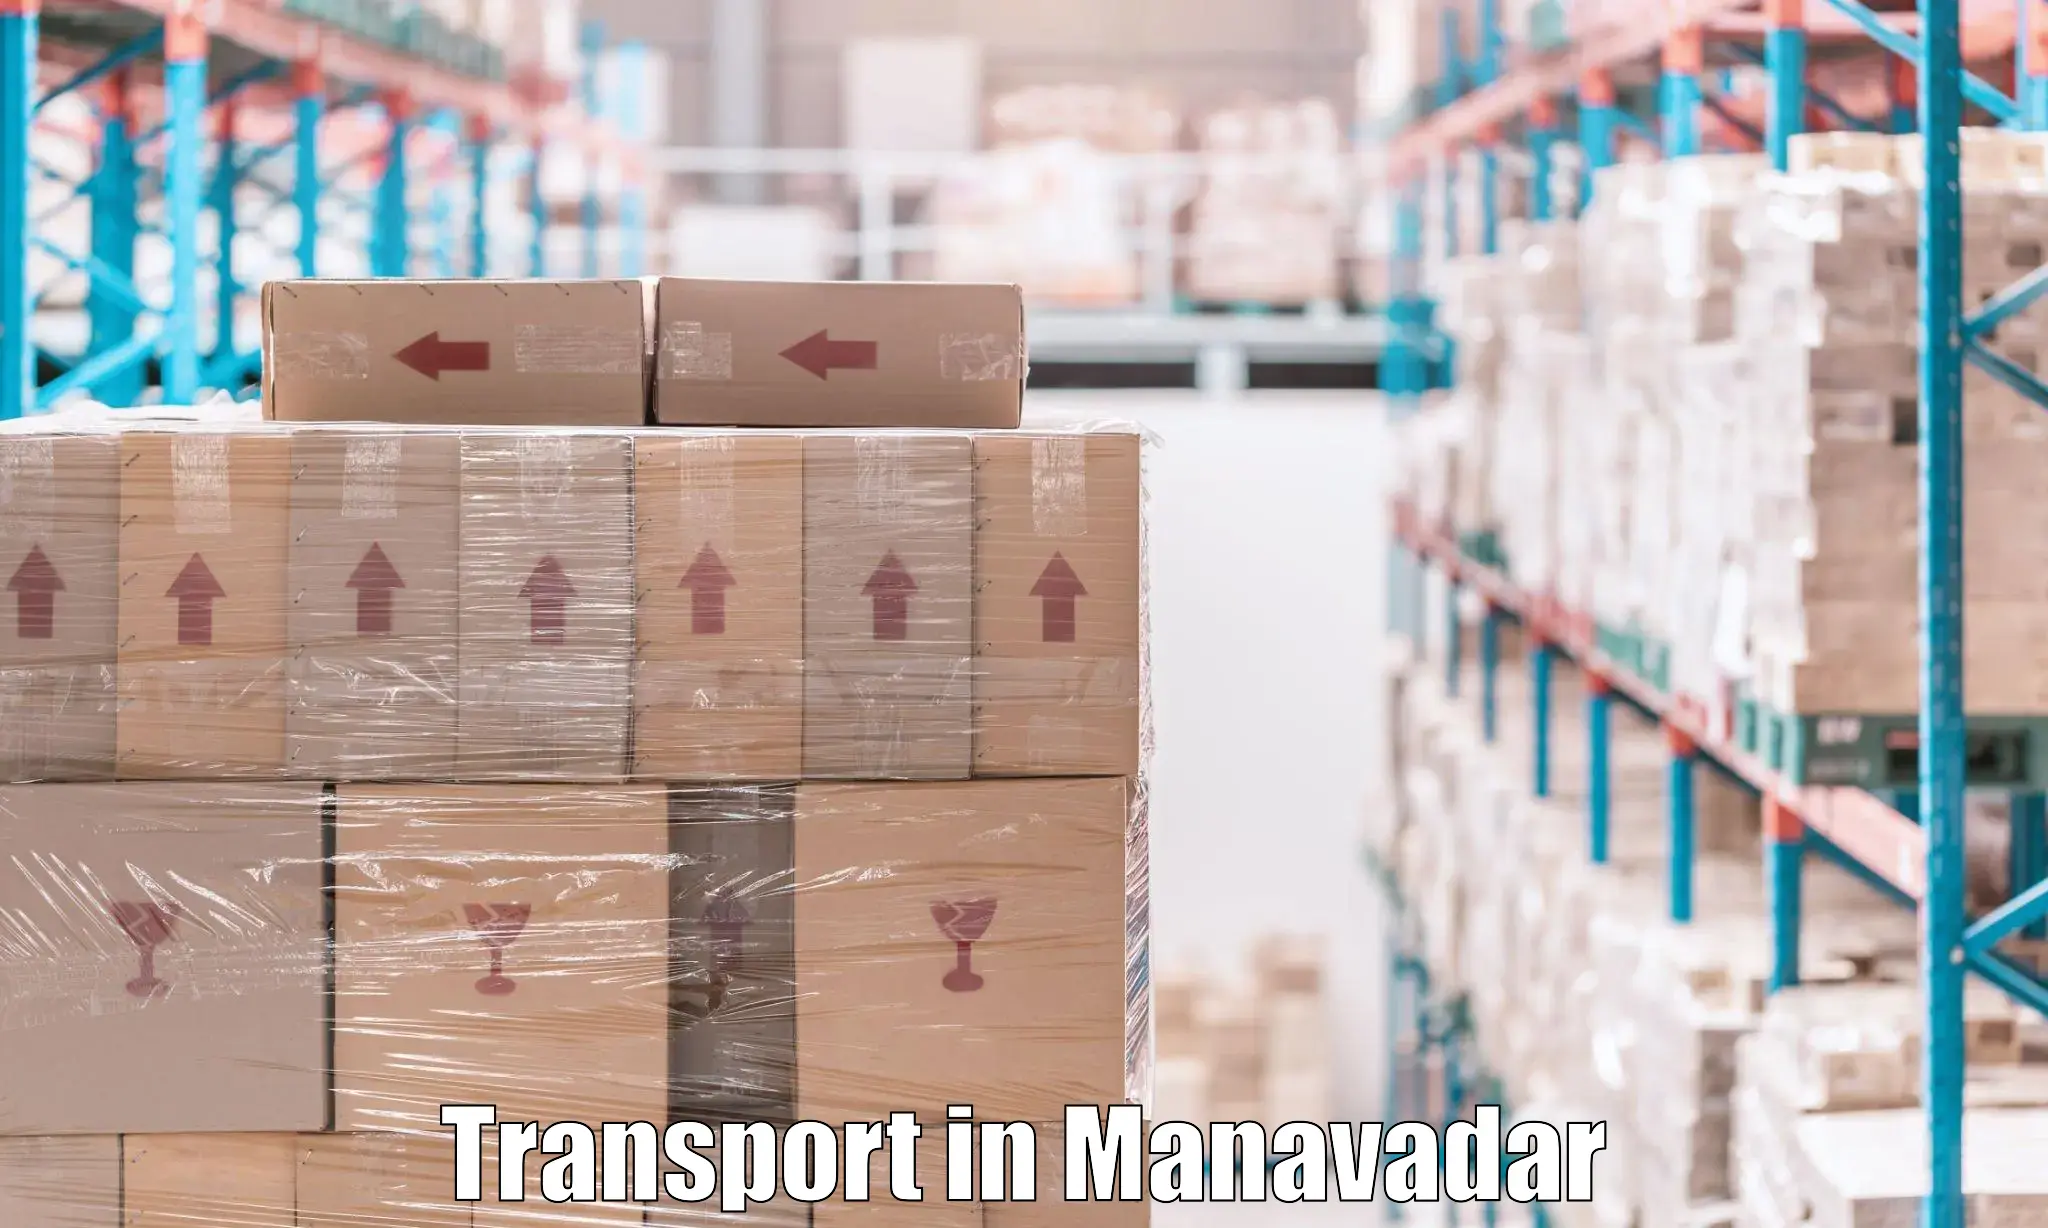 Intercity transport in Manavadar